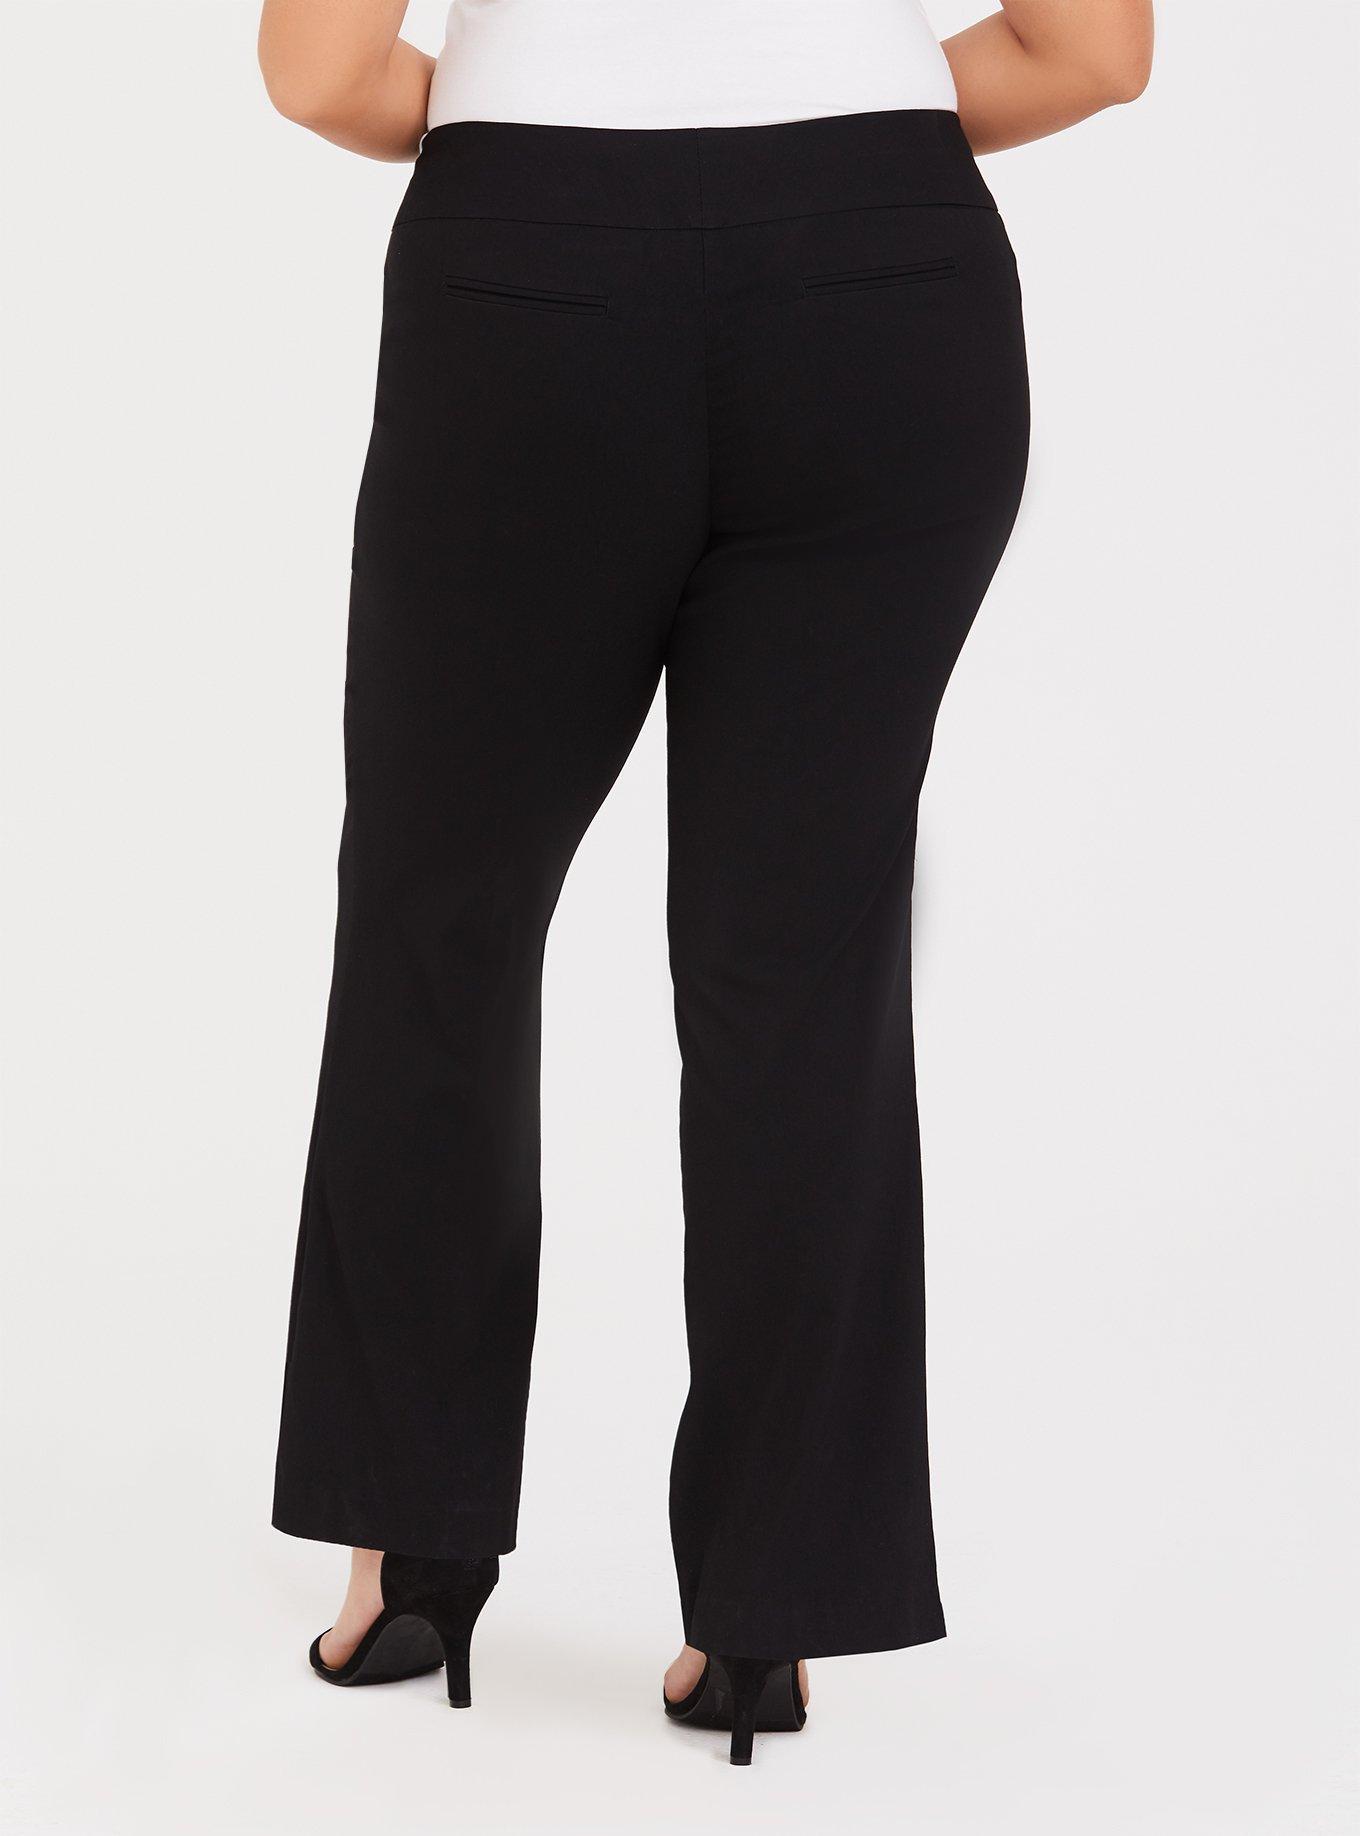 Reyon Plain Women Ultra-Soft Stylish Trouser, Size: 26.0, Model